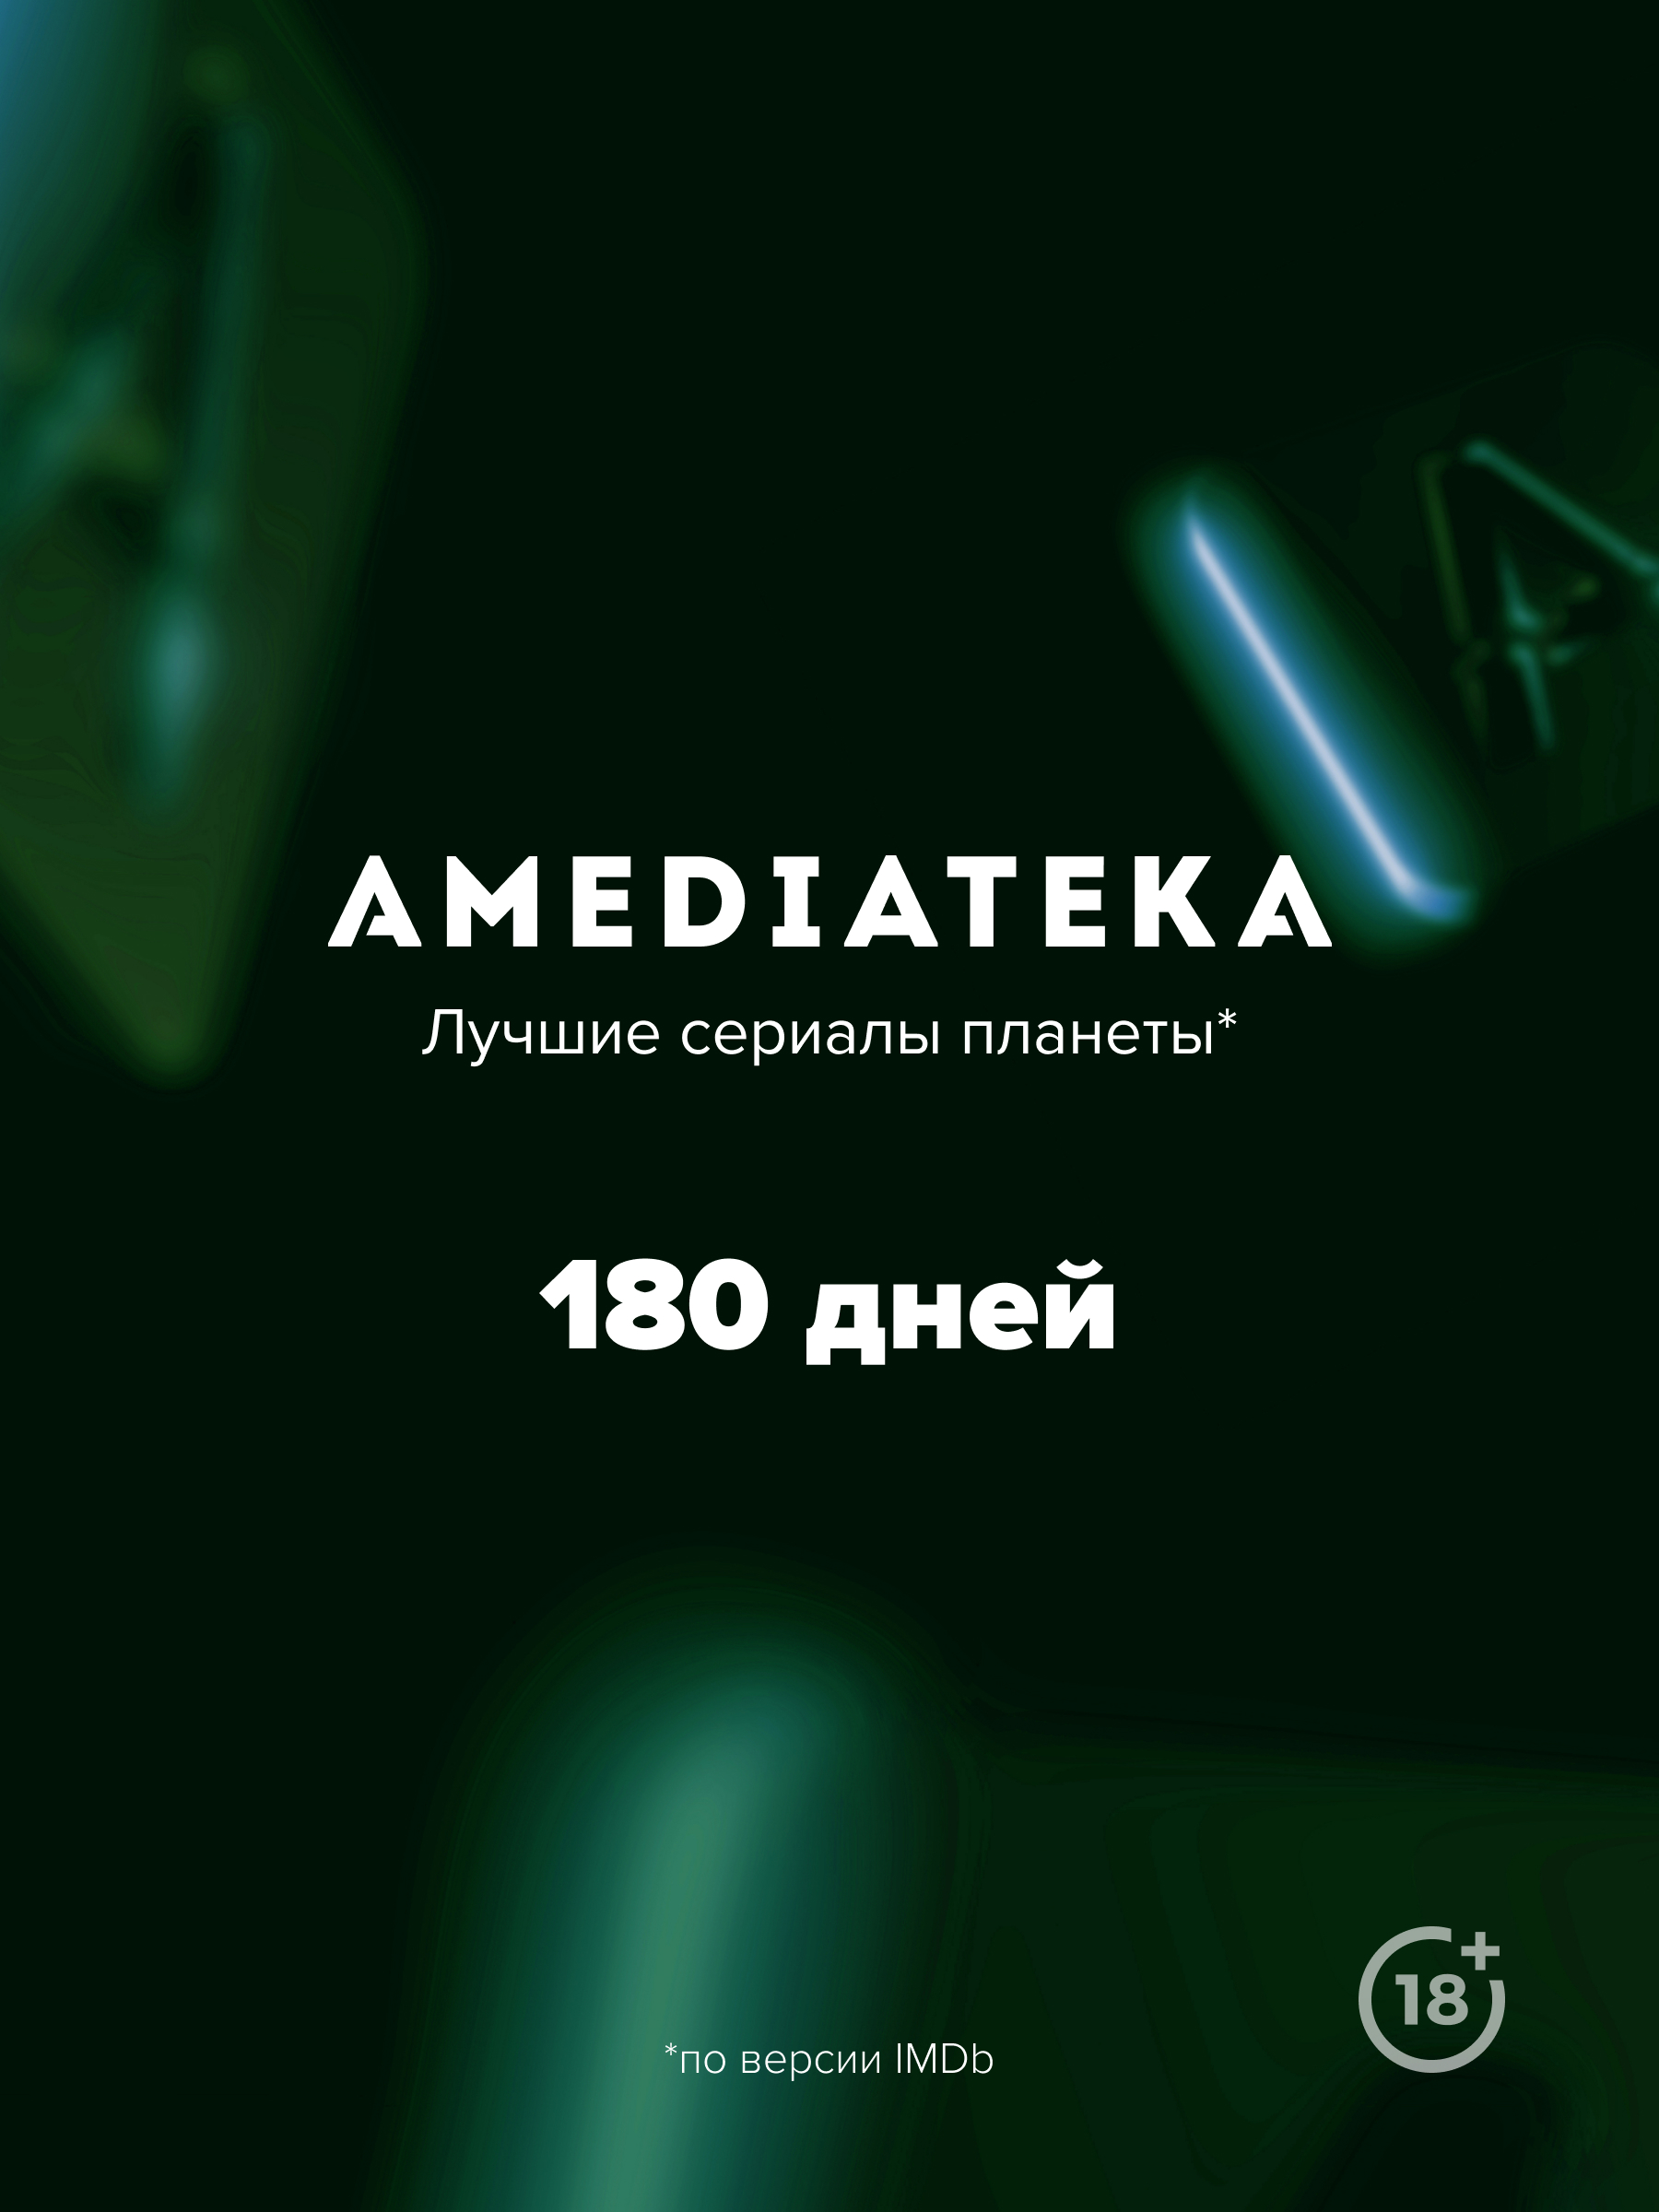 Онлайн-кинотеатр Amediateka (подписка на 180 дней) [Цифровая версия] (Цифровая версия) от 1С Интерес